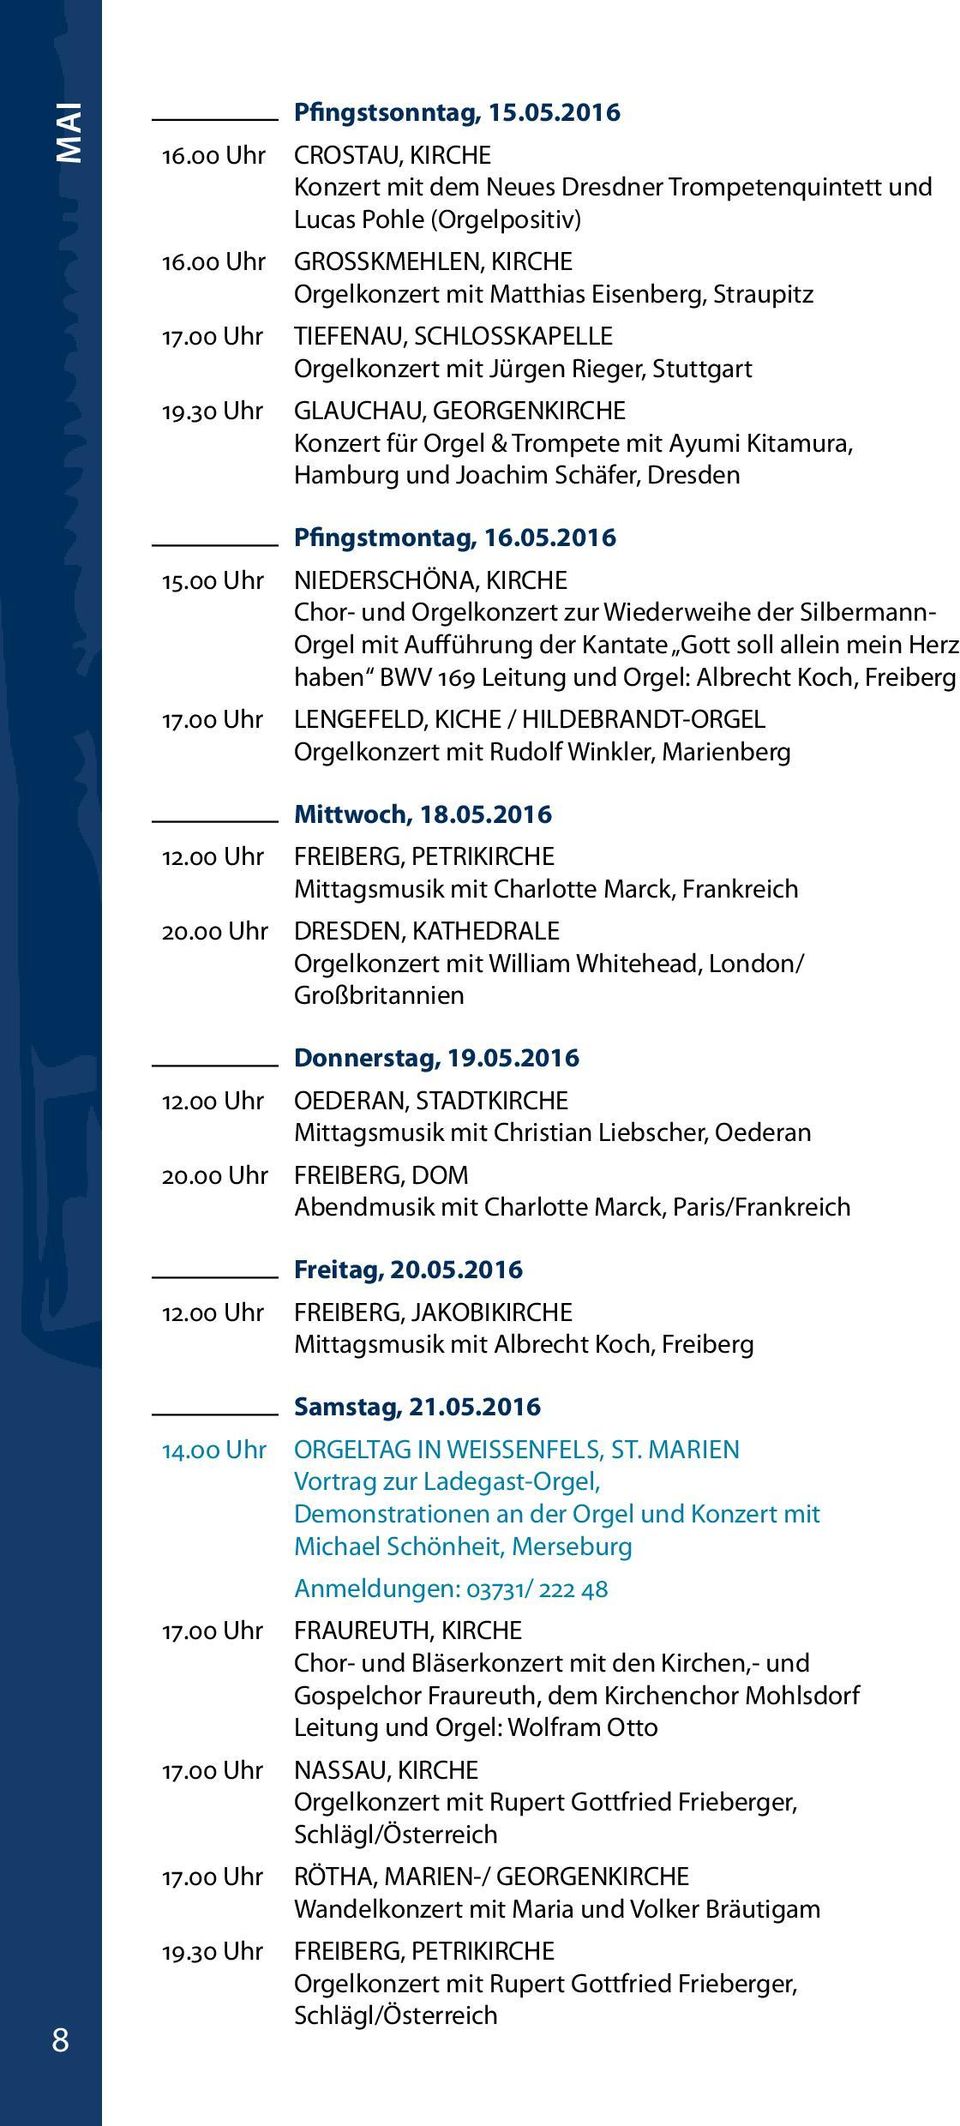 30 Uhr GLAUCHAU, GEORGENKIRCHE Konzert für Orgel & Trompete mit Ayumi Kitamura, Hamburg und Joachim Schäfer, Dresden Pfingstmontag, 16.05.2016 15.